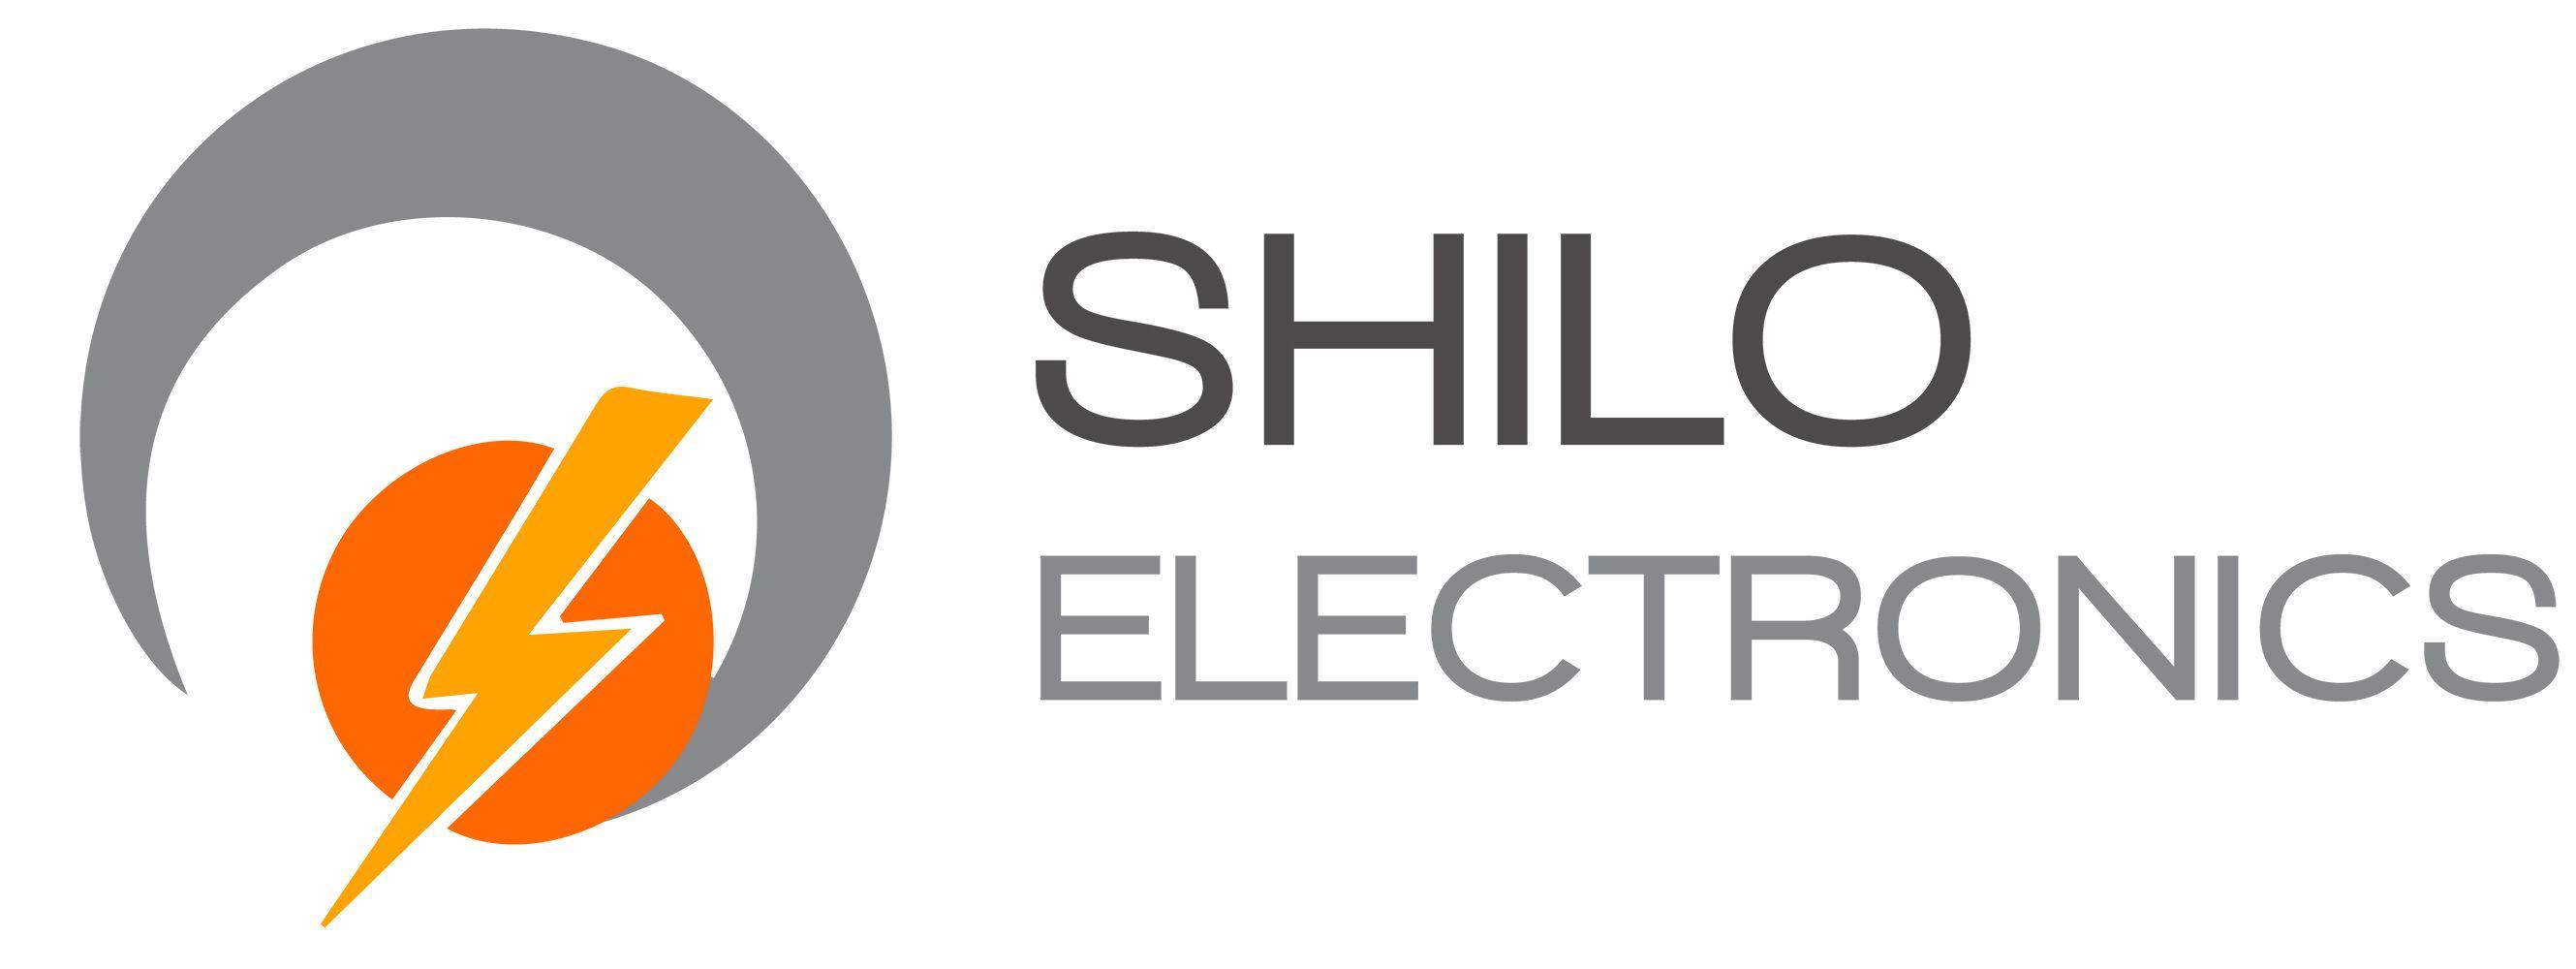 Electronics Logo - Shilo Electronics Logo - Project Design Online Marketing